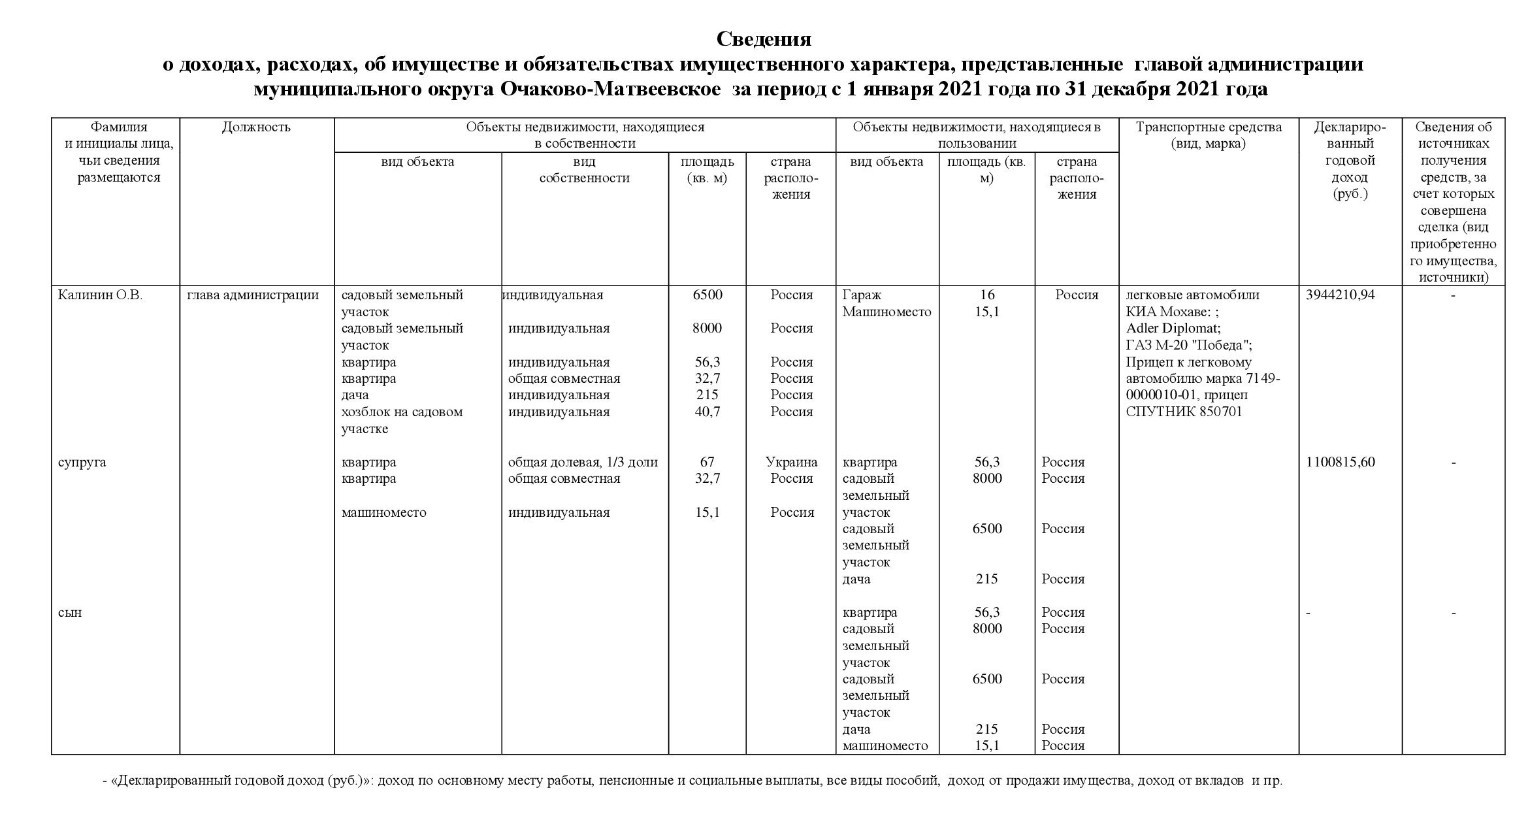 Глава Администрации муниципального округа Очаково-Матвеевское (все представленные сведения)